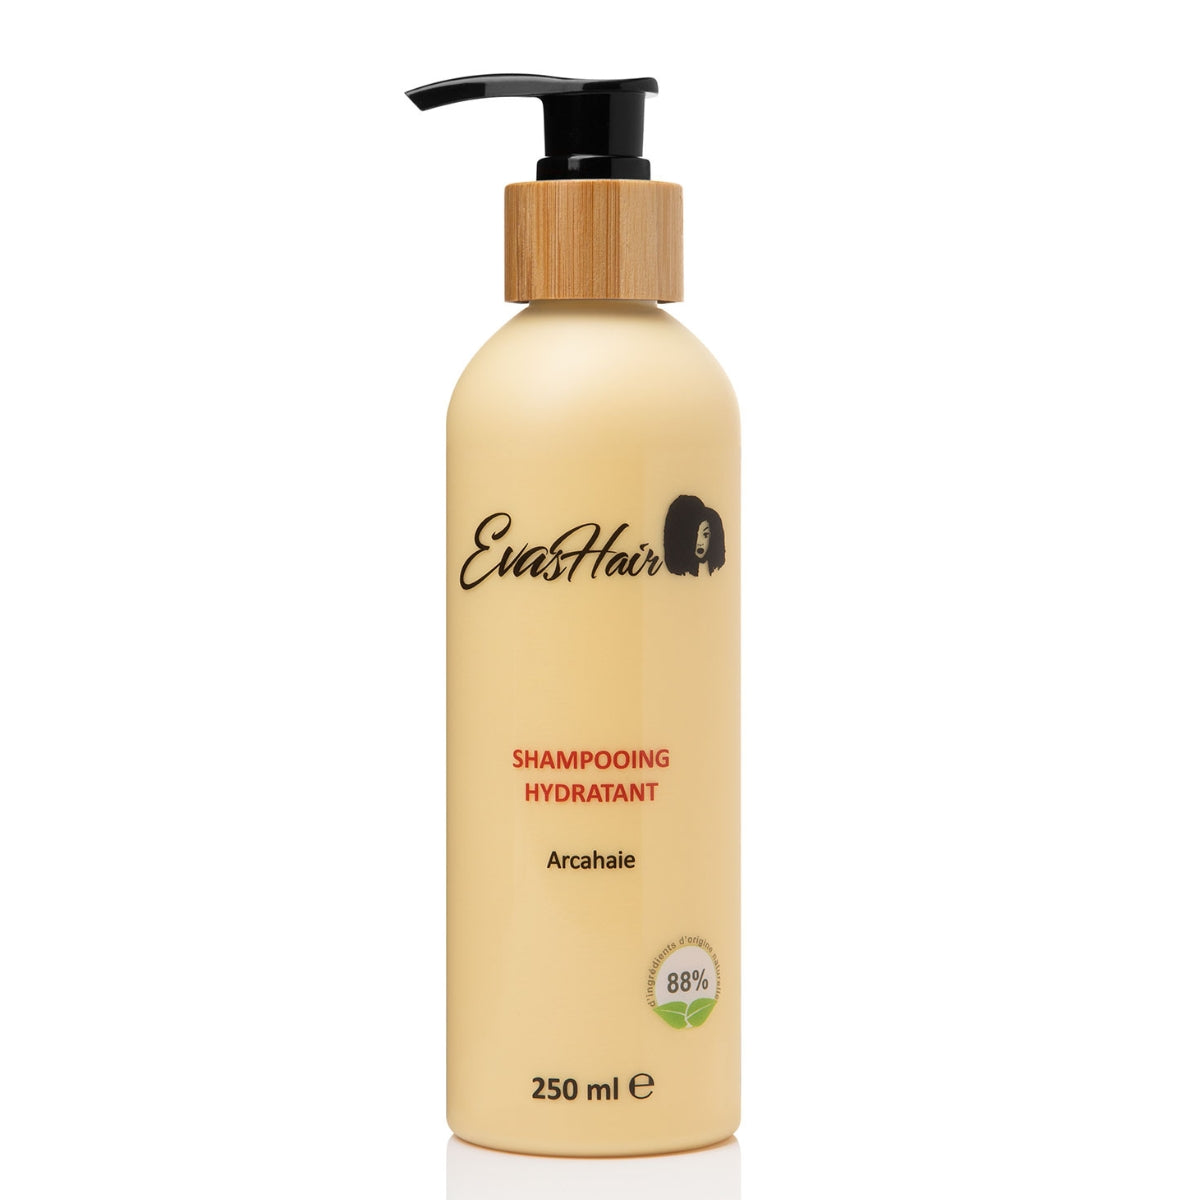 Shampoing hydratant de la marque Evashair. Arcahaie permet de maintenir les cheveux hydratés en profondeur. Idéal sur les cheveux dits "crépus", "frisés" et bouclés.